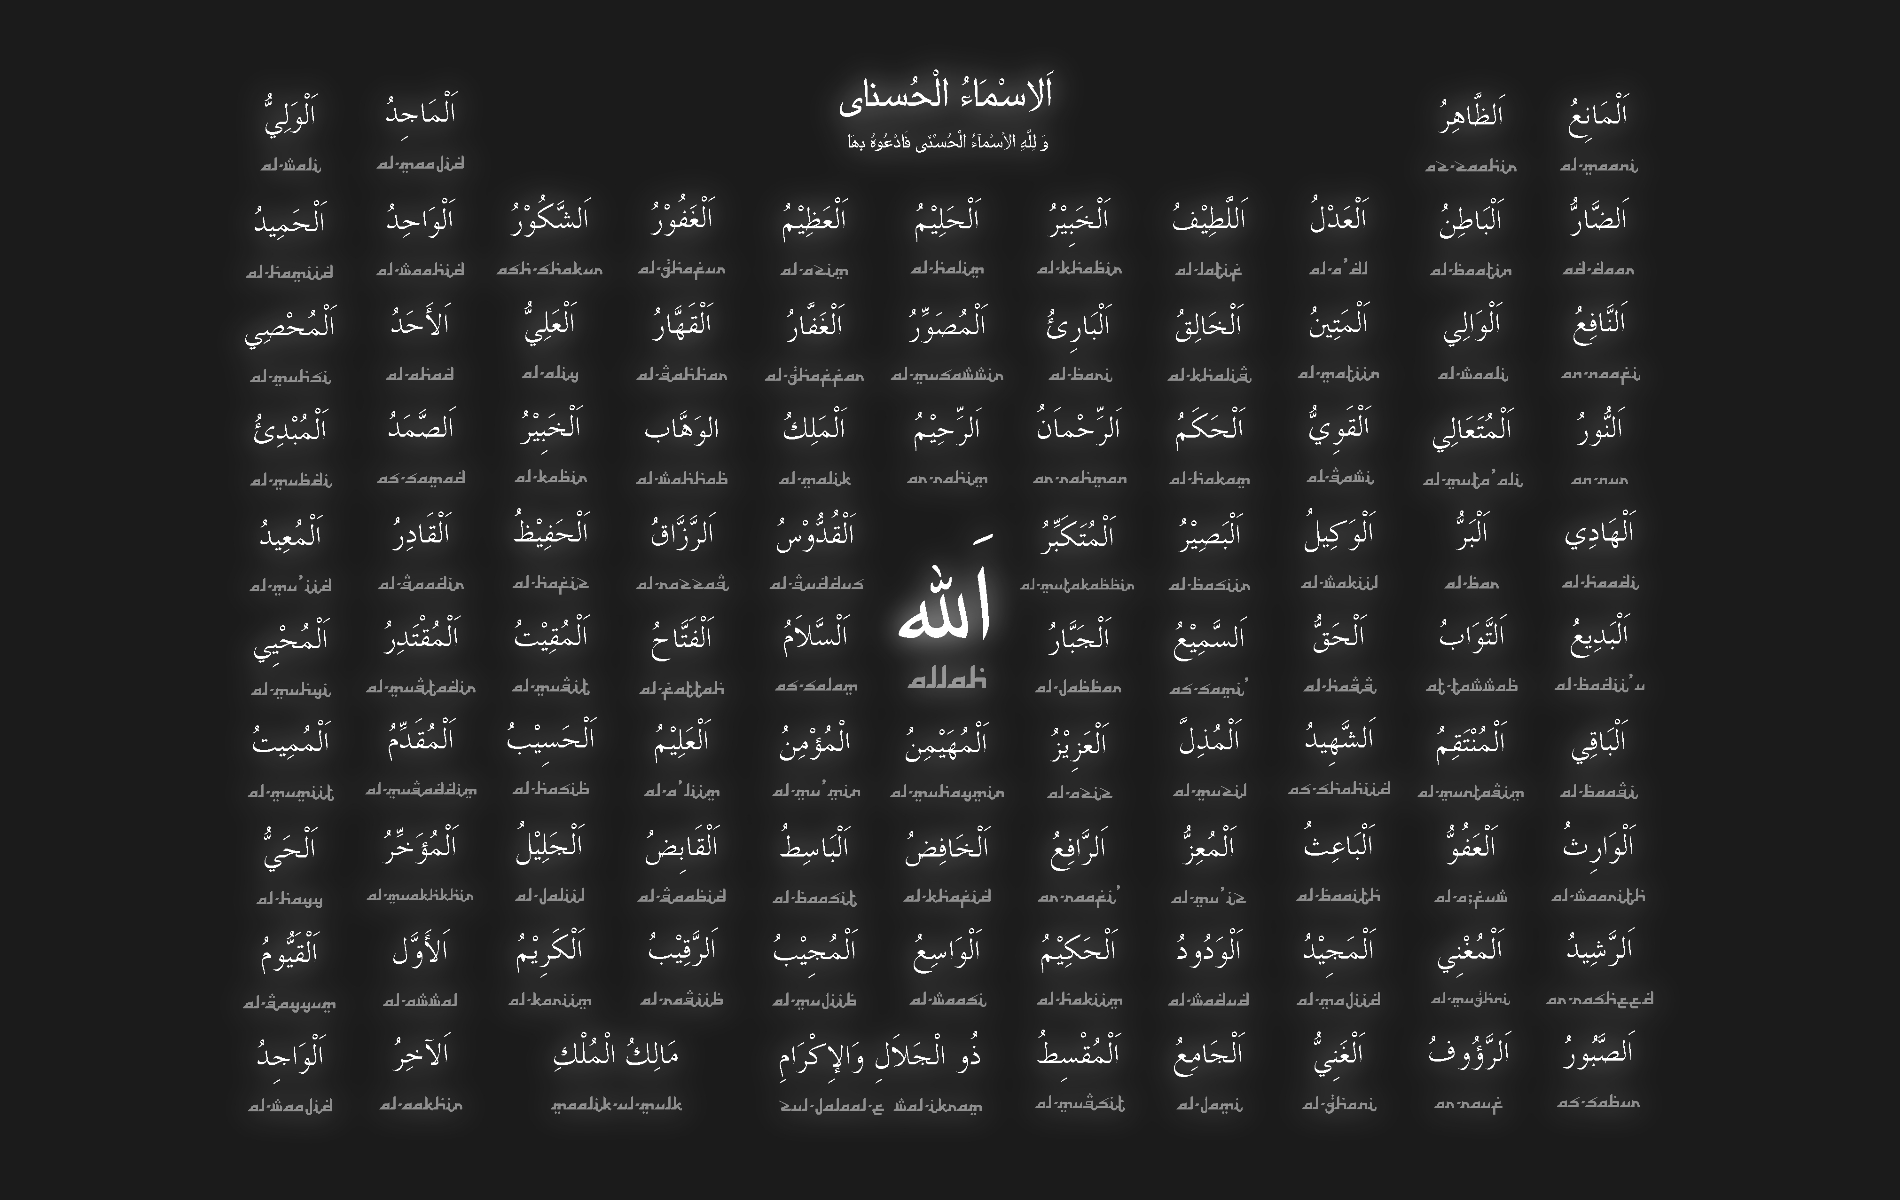 الأسماء الحٌسنی  /   99name of allah